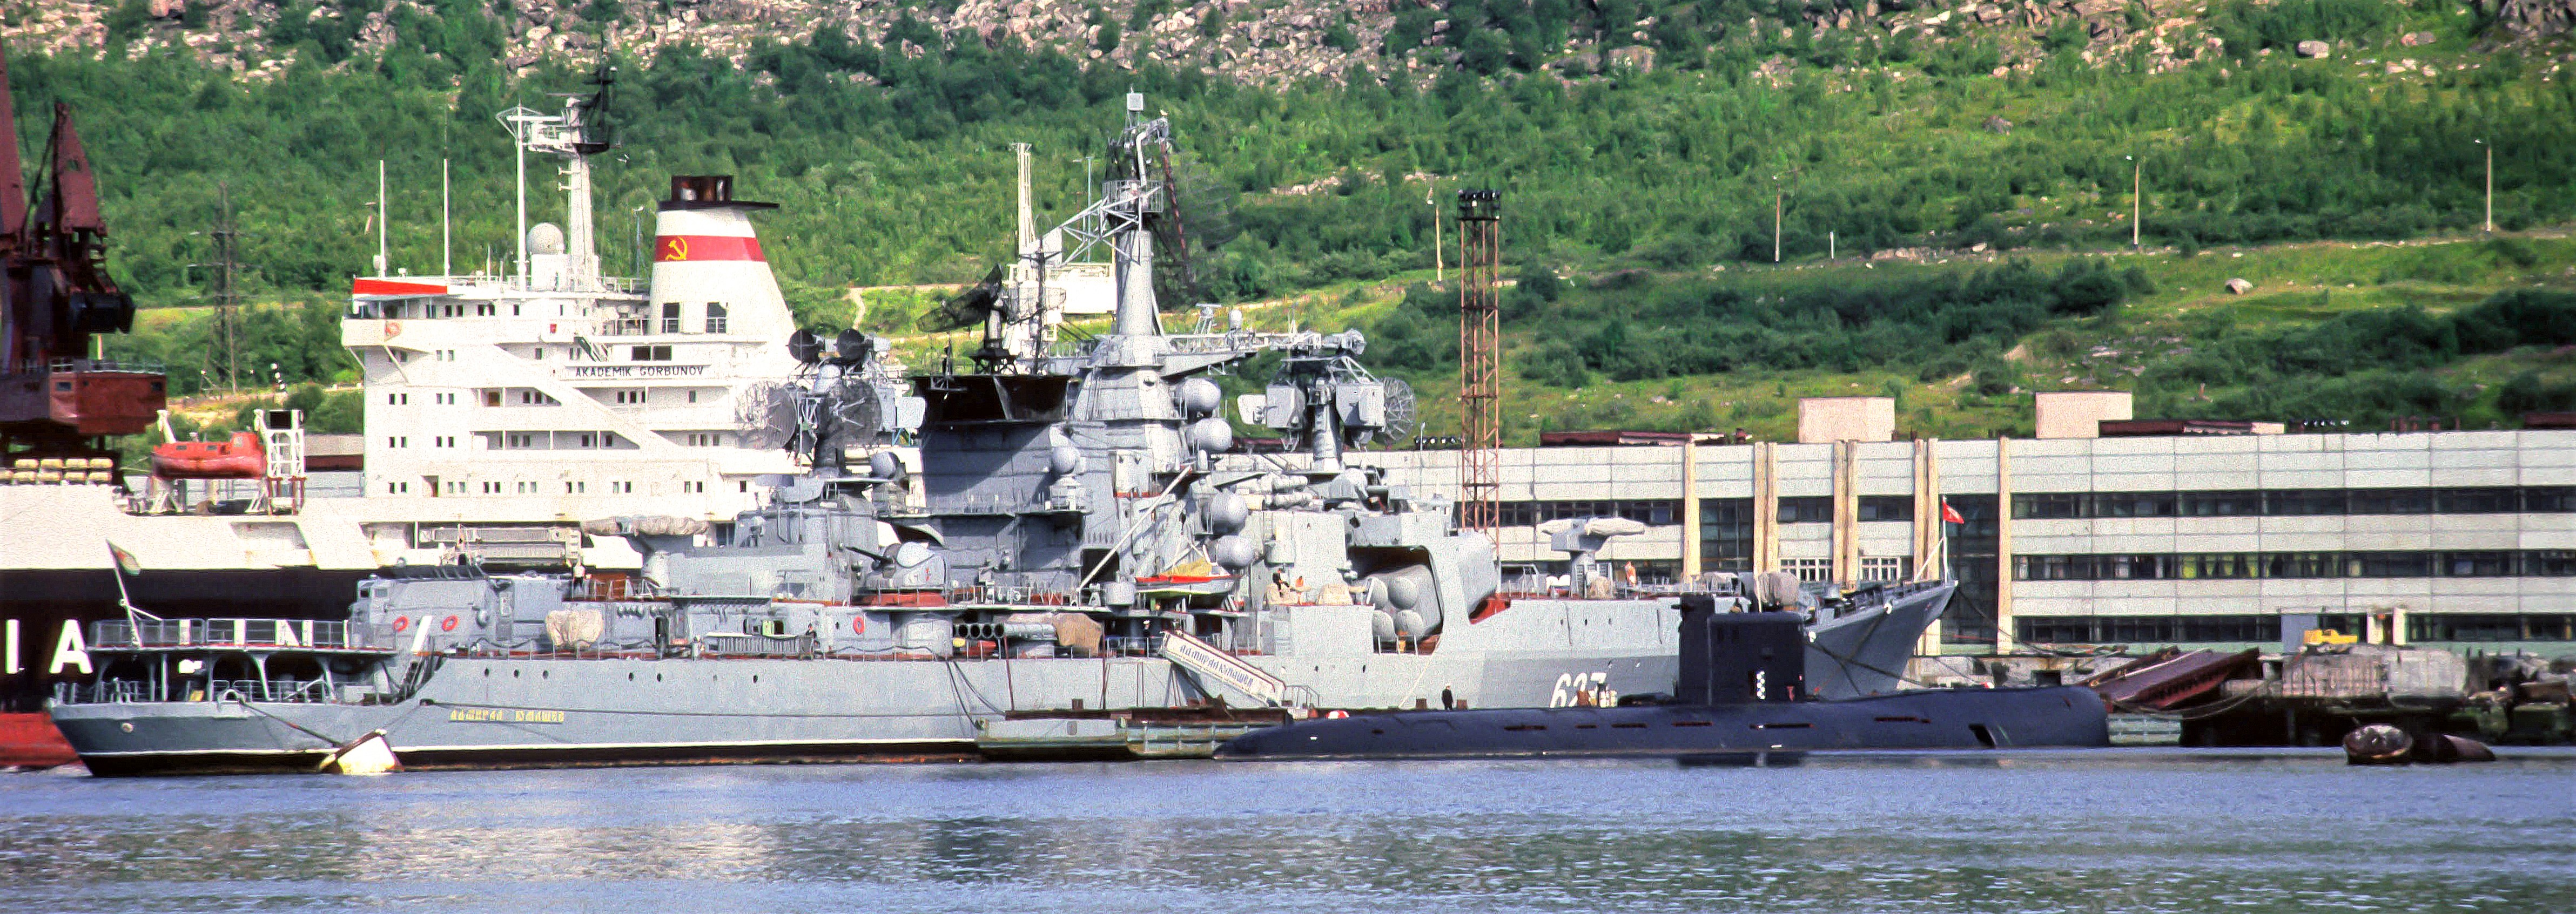 «Адмирал Юмашев».JPG